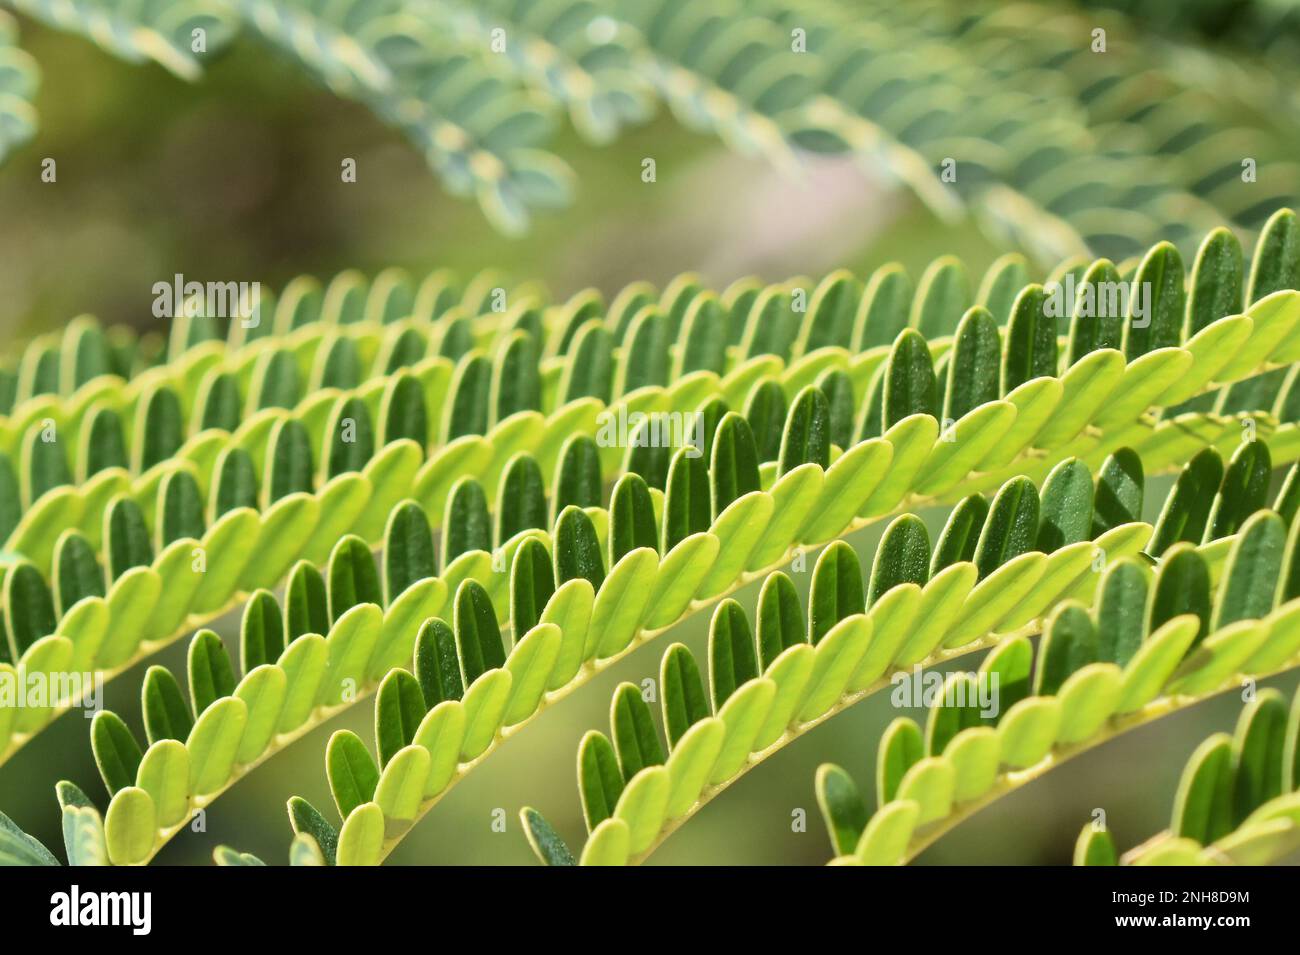 Nahaufnahme der fernähnlichen Blätter eines persischen Seidenbaums Albizia julibrissin Stockfoto